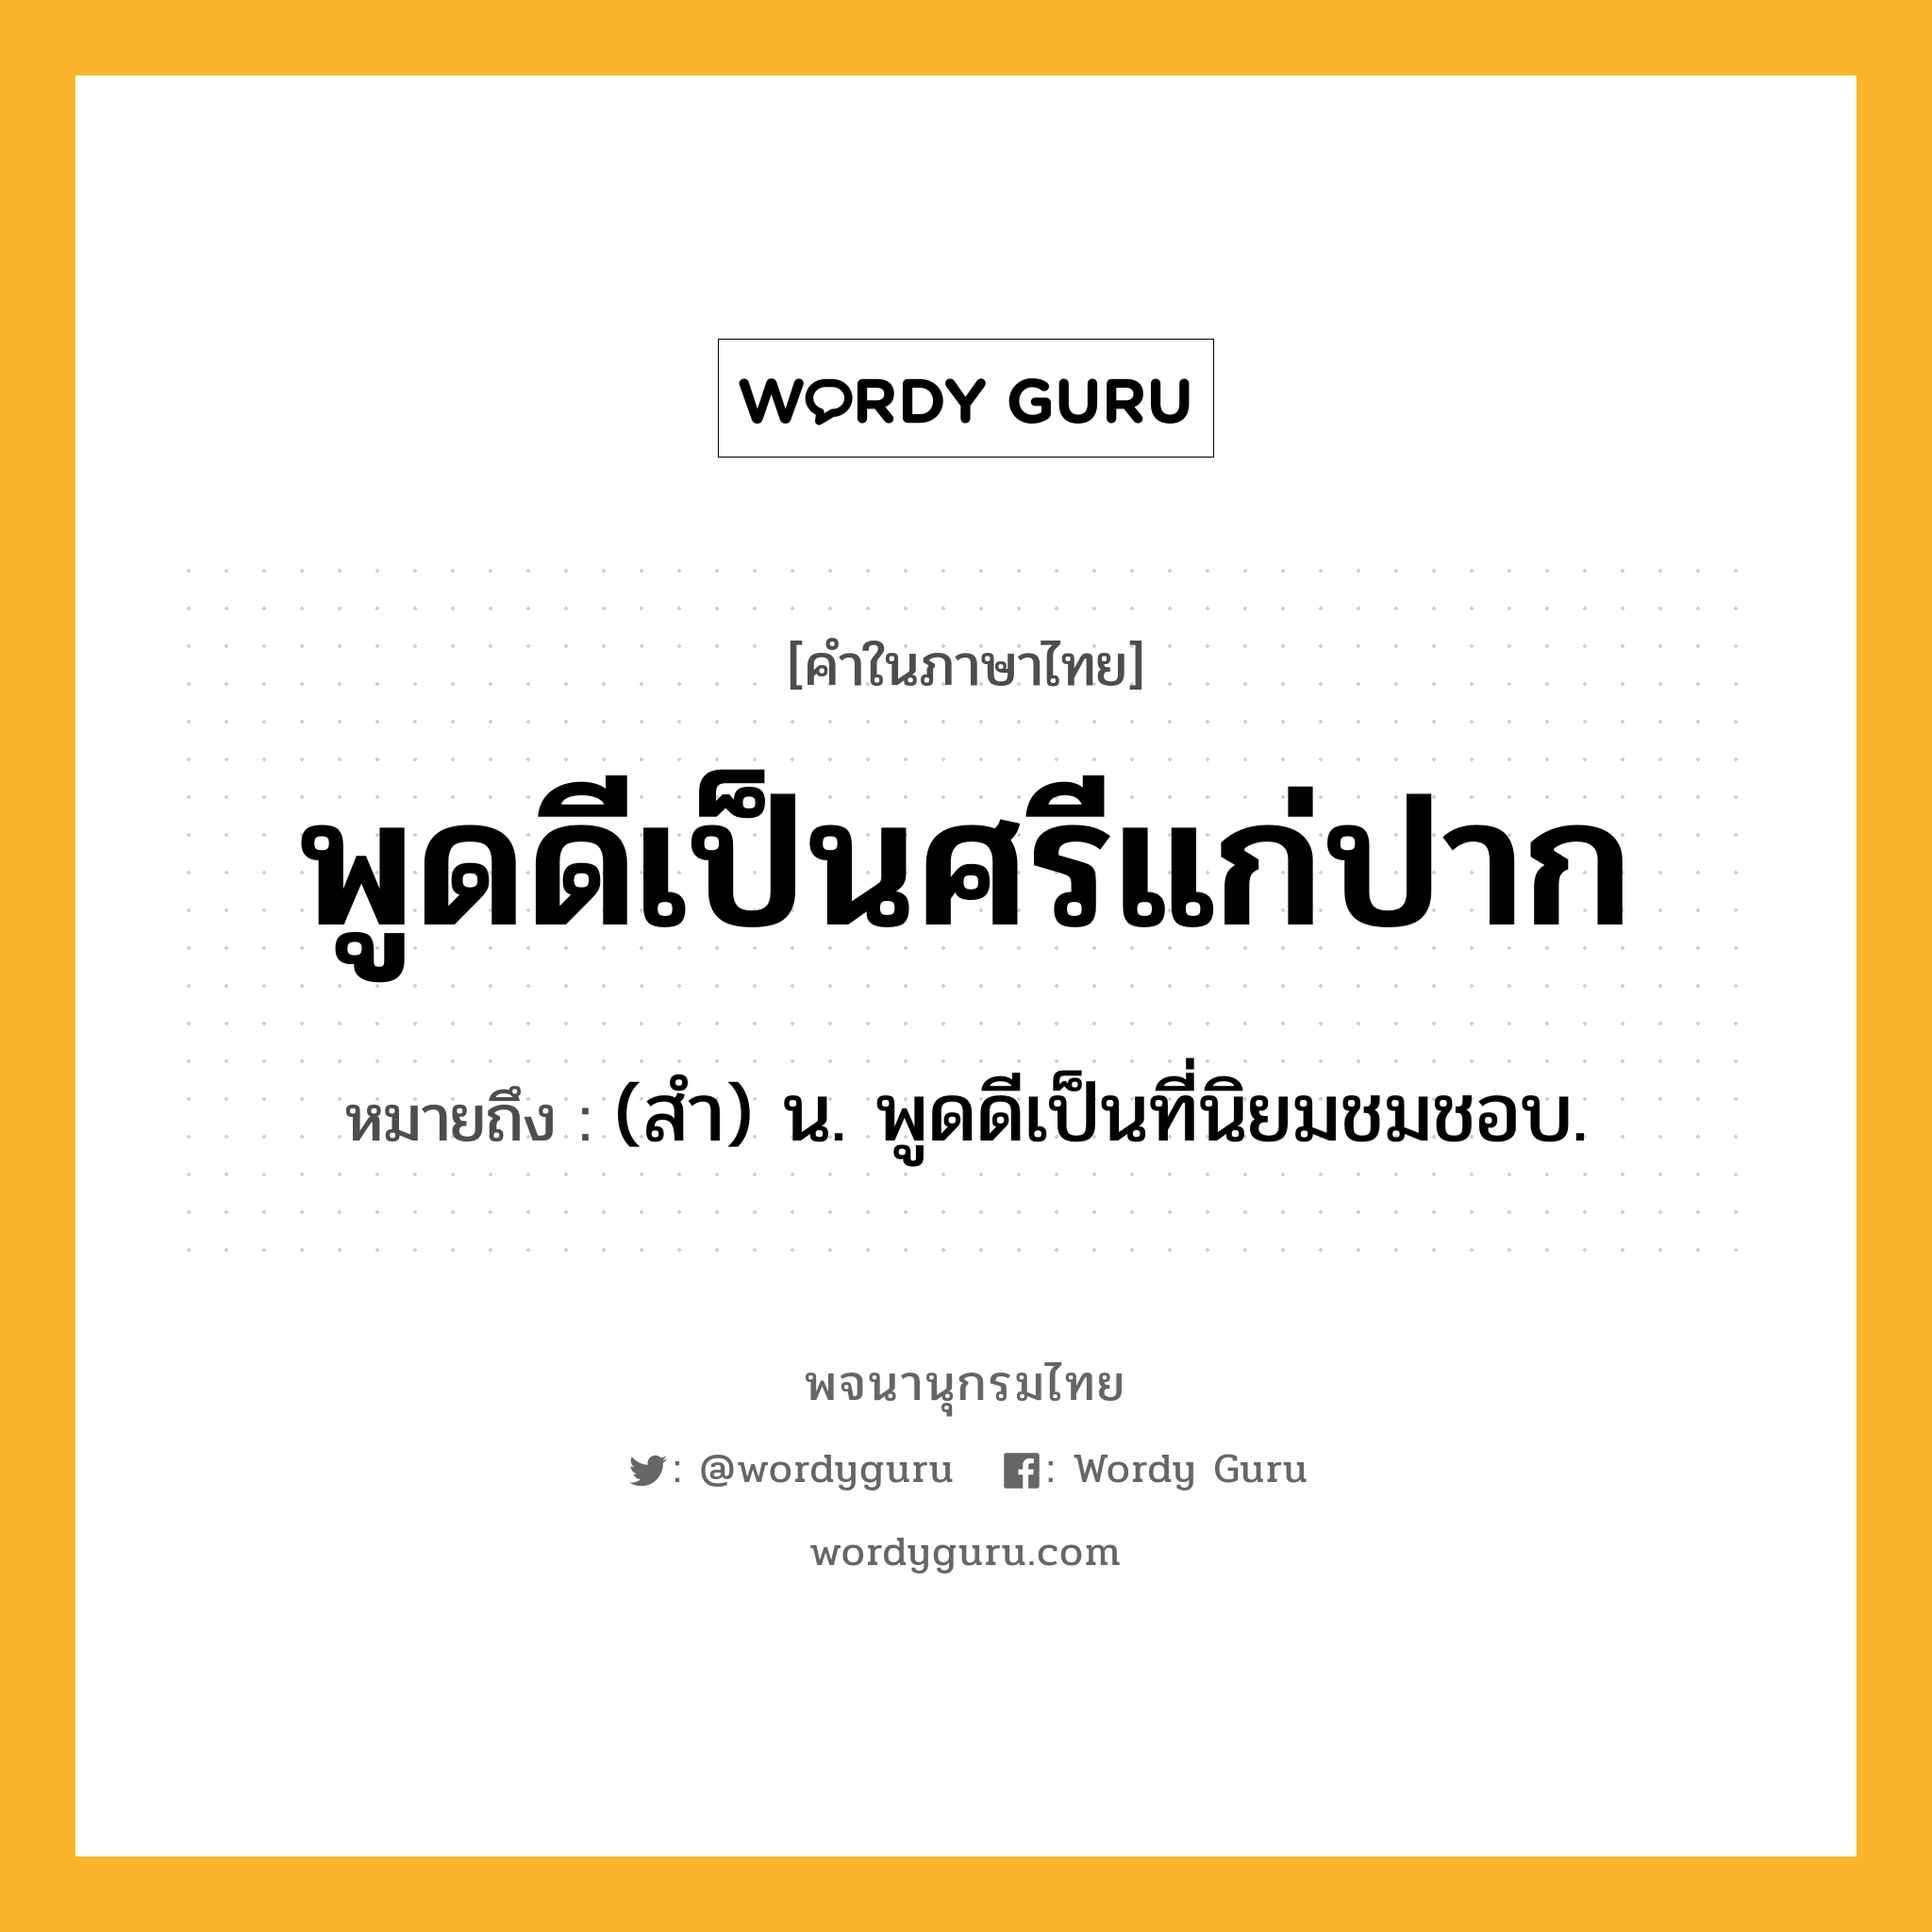 พูดดีเป็นศรีแก่ปาก ความหมาย หมายถึงอะไร?, คำในภาษาไทย พูดดีเป็นศรีแก่ปาก หมายถึง (สํา) น. พูดดีเป็นที่นิยมชมชอบ.